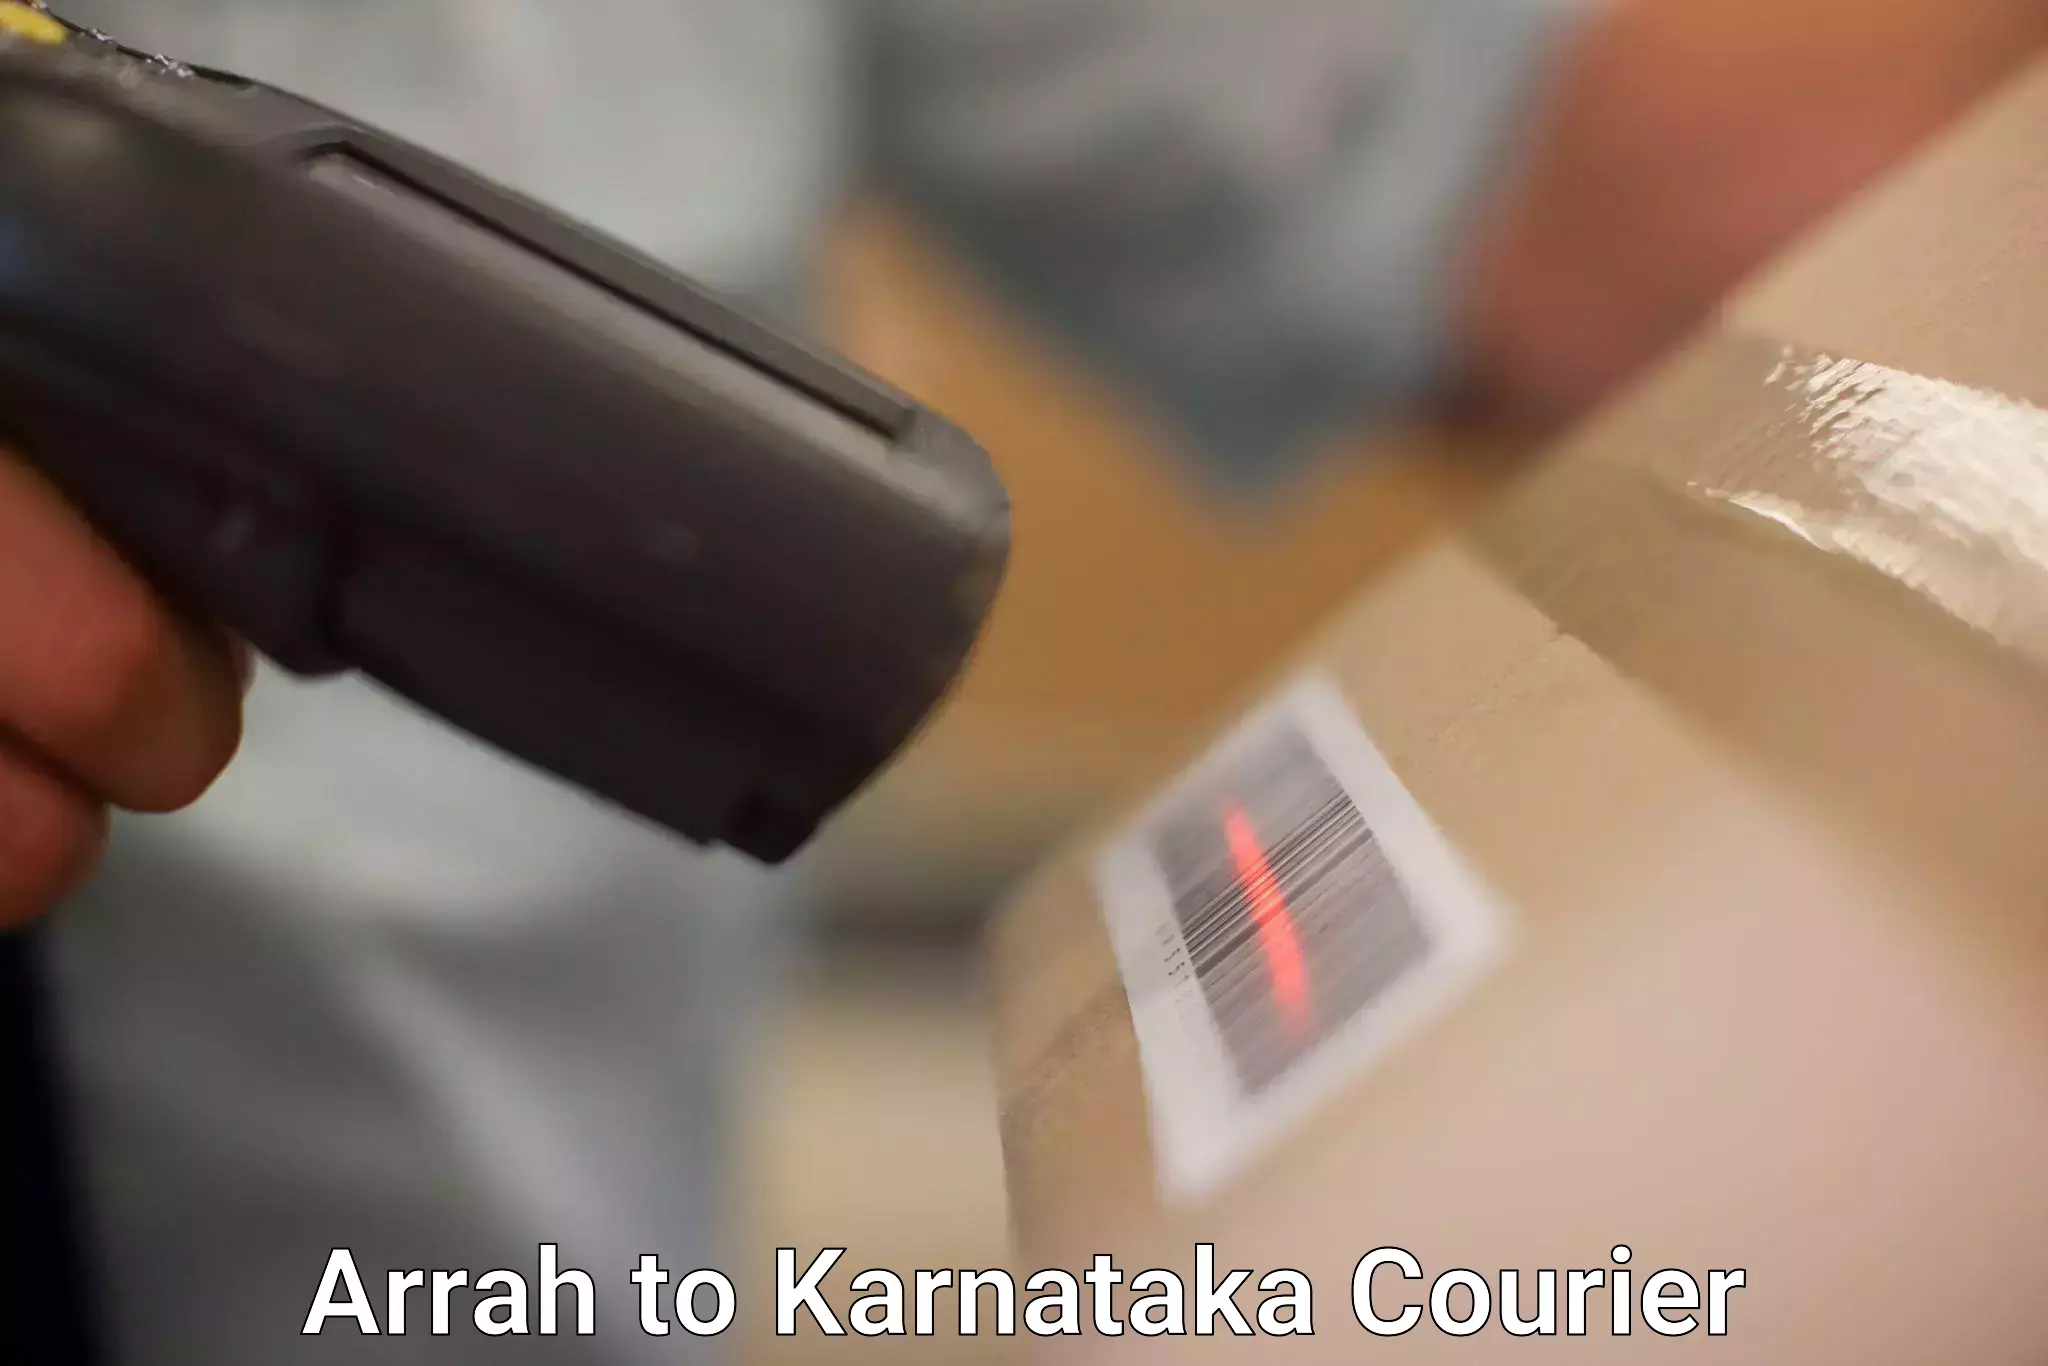 Modern courier technology Arrah to Karnataka